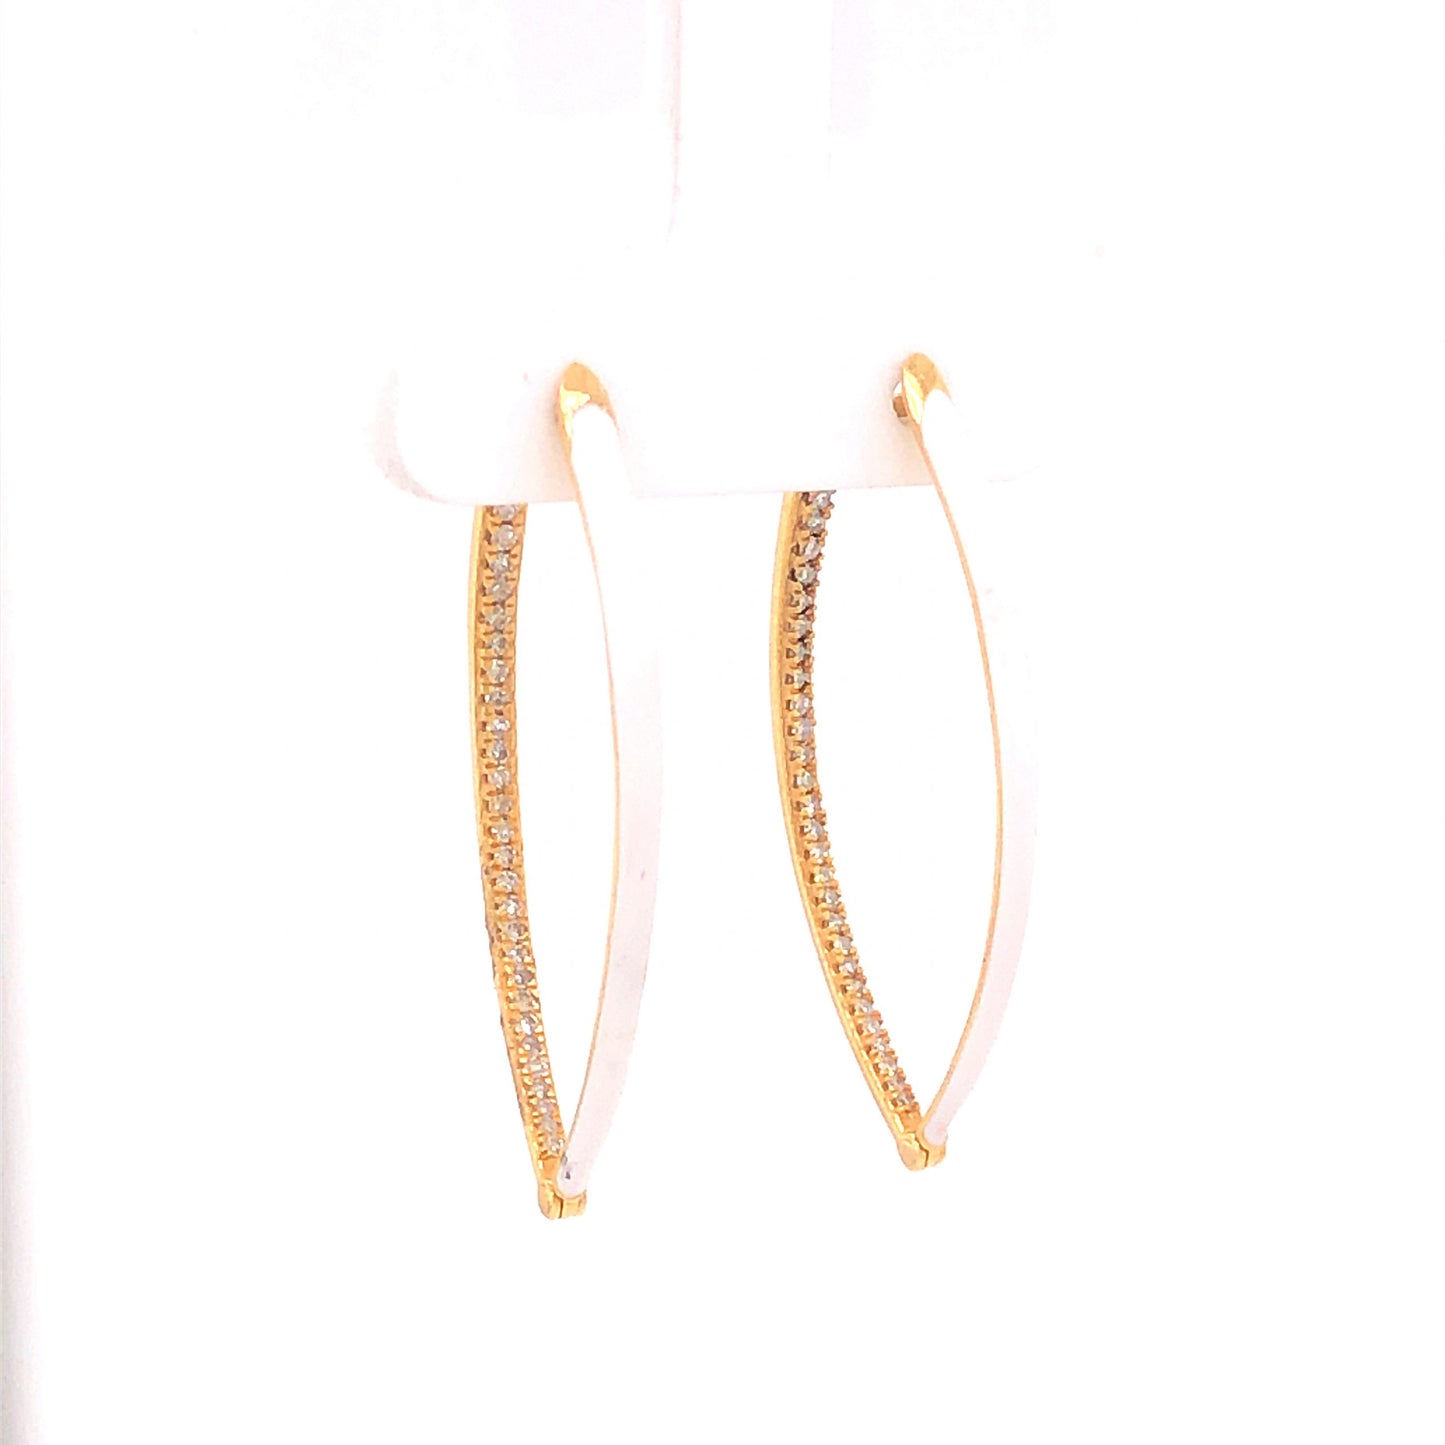 Diamond & Enamel Hoop Earrings in 14k Yellow Gold